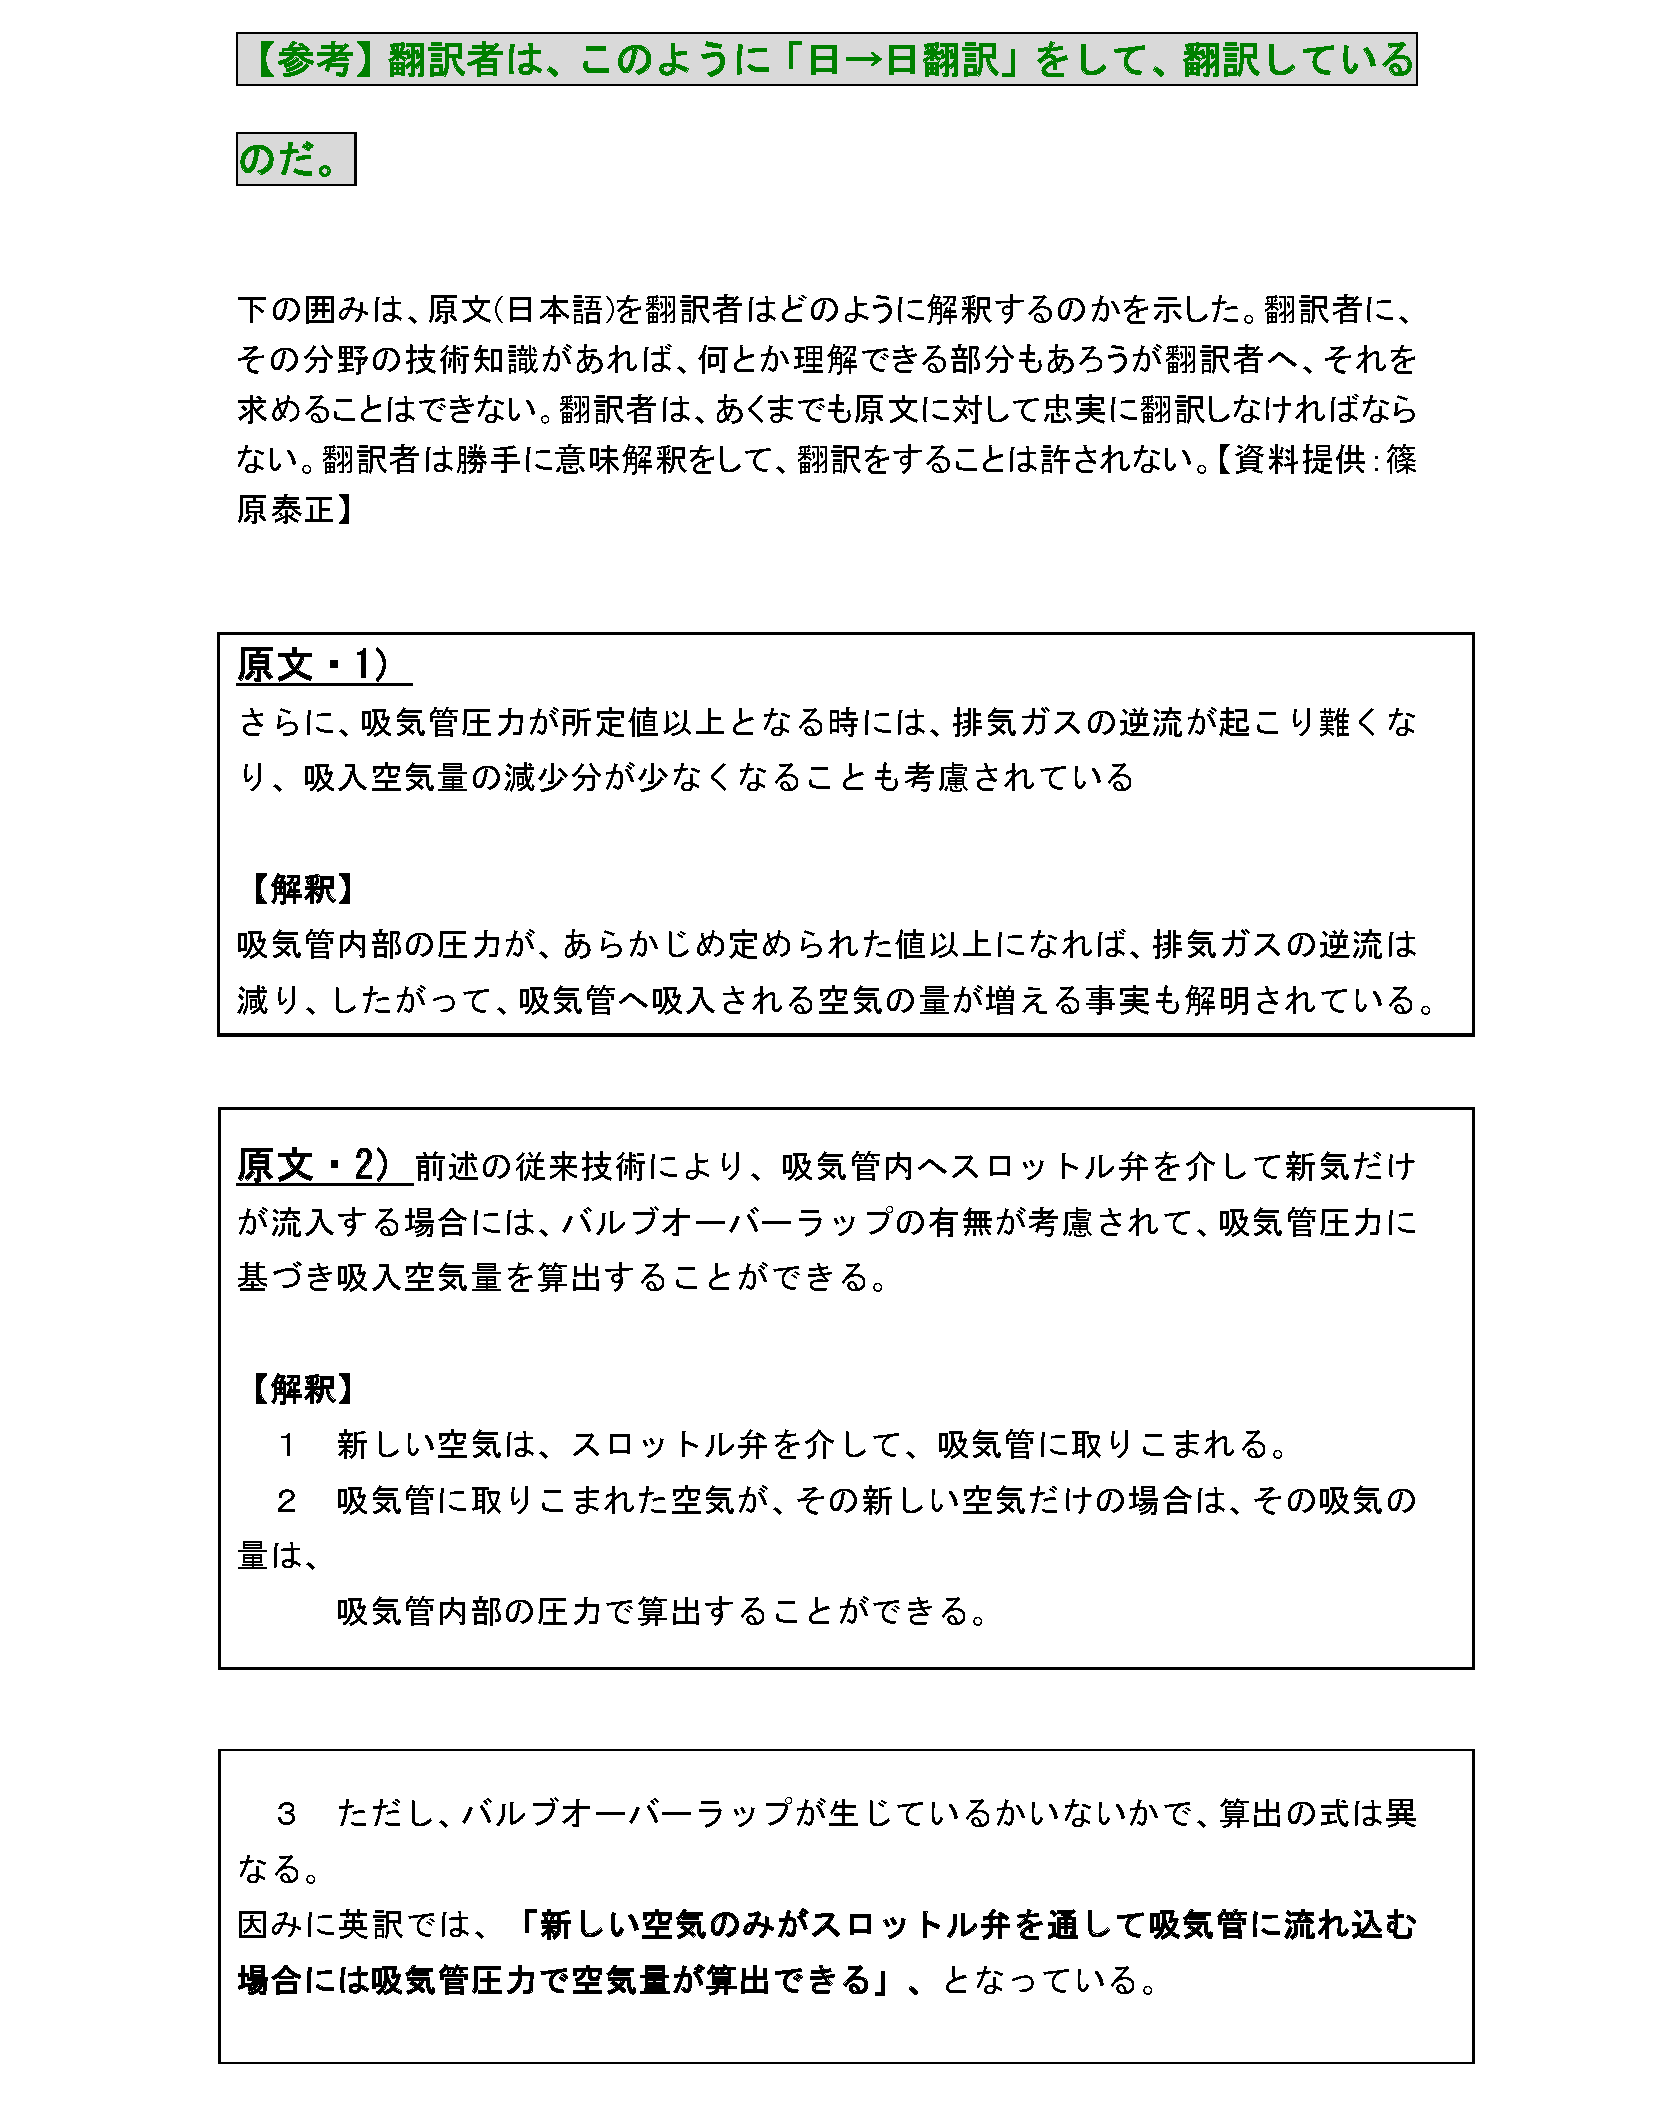 世界で通用する（戦える、共生）できる「基準・規準特許出願明細書」を作ろう_『参考』機械翻訳ソフトの支援が受け入れられる日本語で書くことはできる2